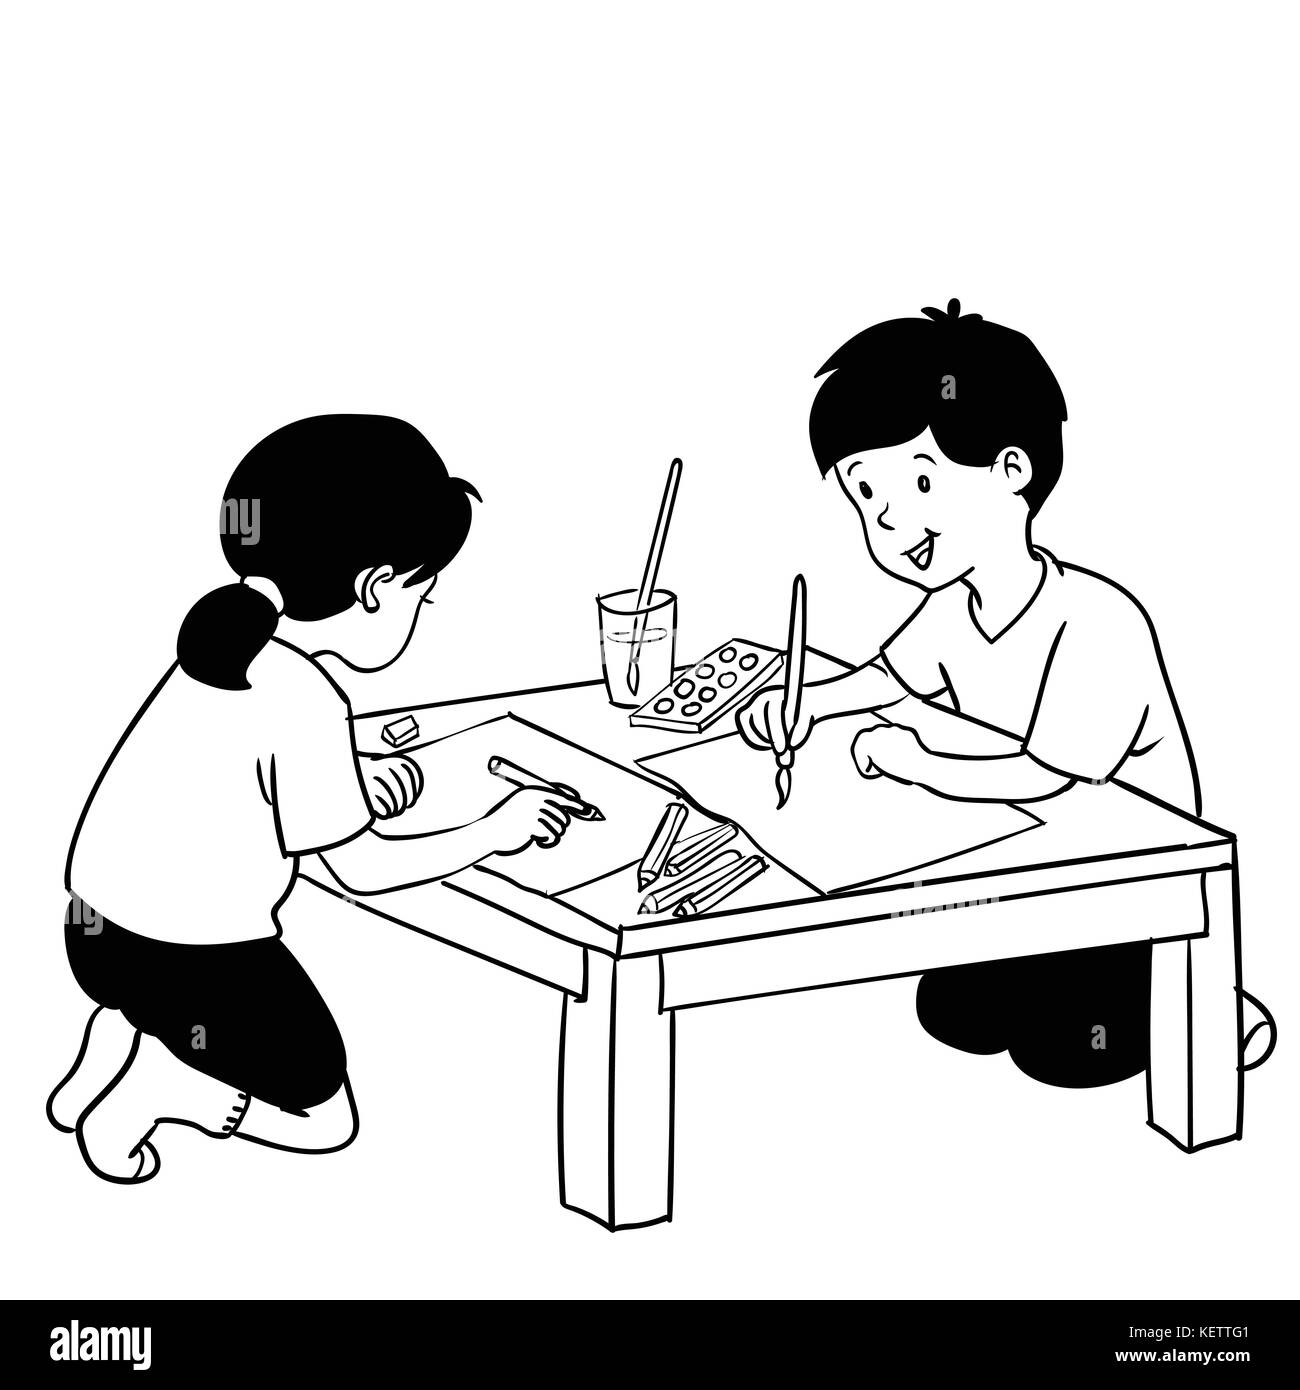 Abbildung: Kinder malen auf Kunst Klasse, Hand gezeichnet Vector Illustration. zurück zu Schule - zwei Kinder, ein Junge und ein Mädchen glücklich sind Kunst, p Stock Vektor